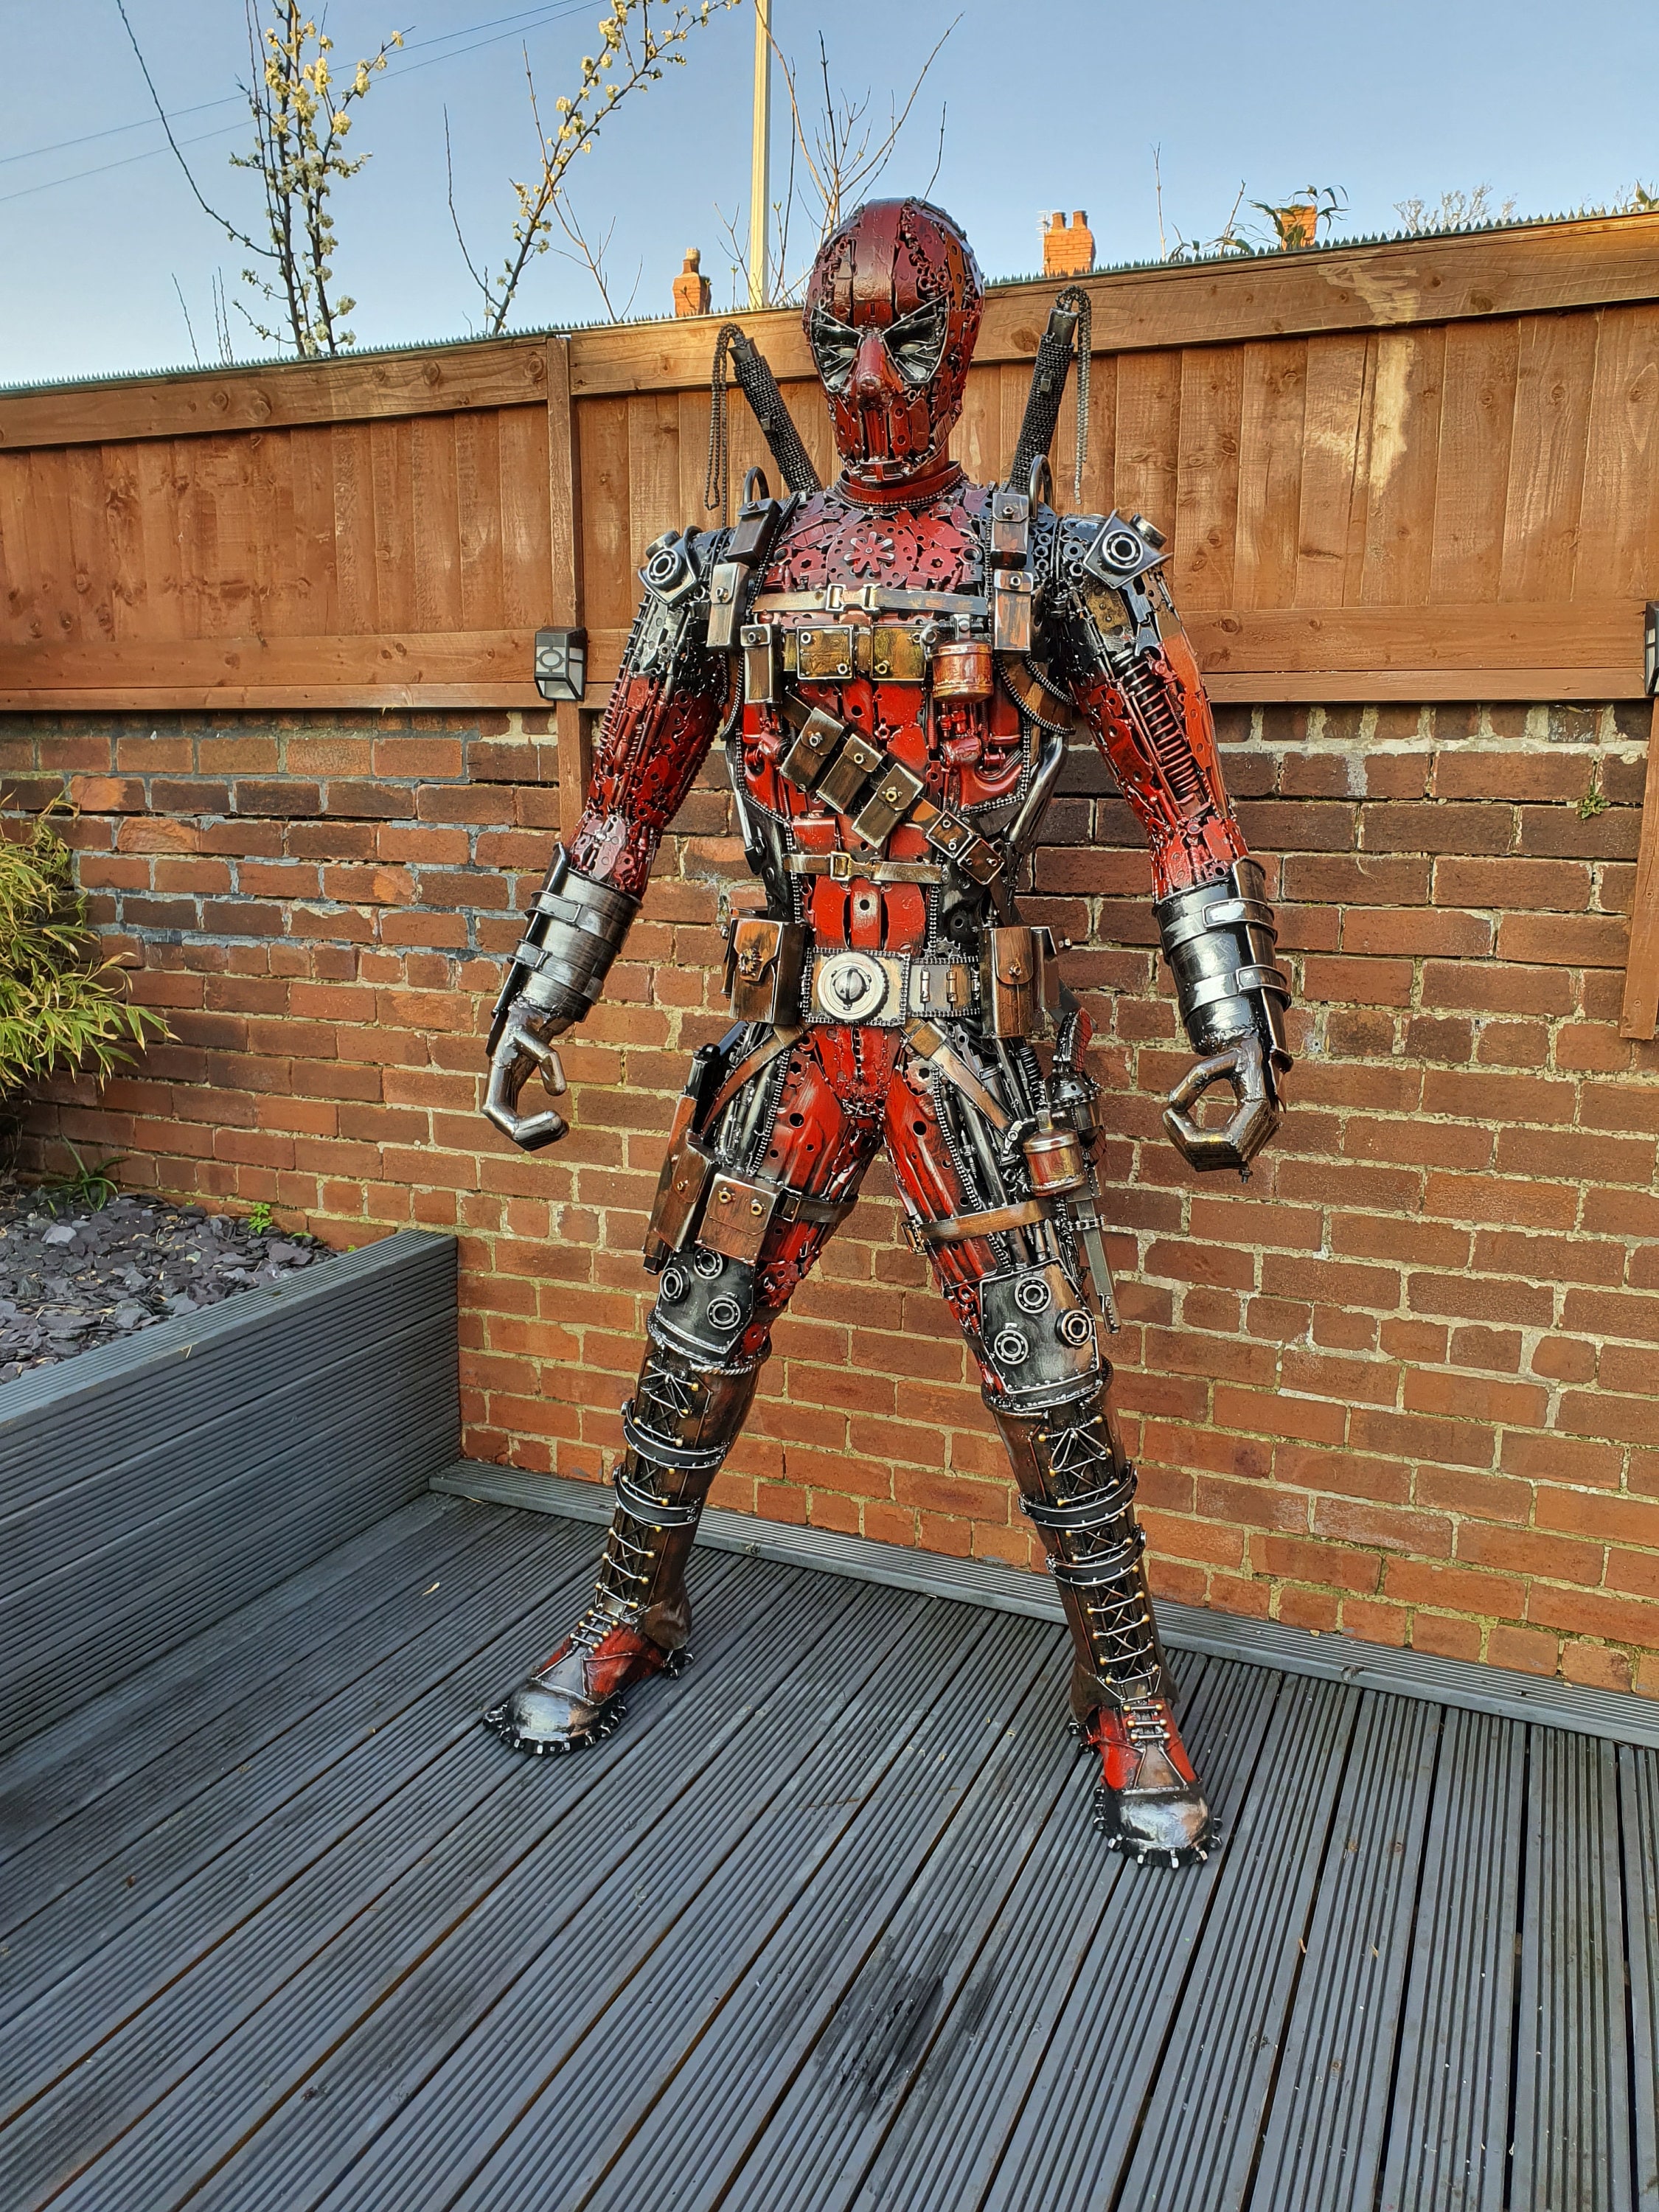 Deadpool Costume -  UK